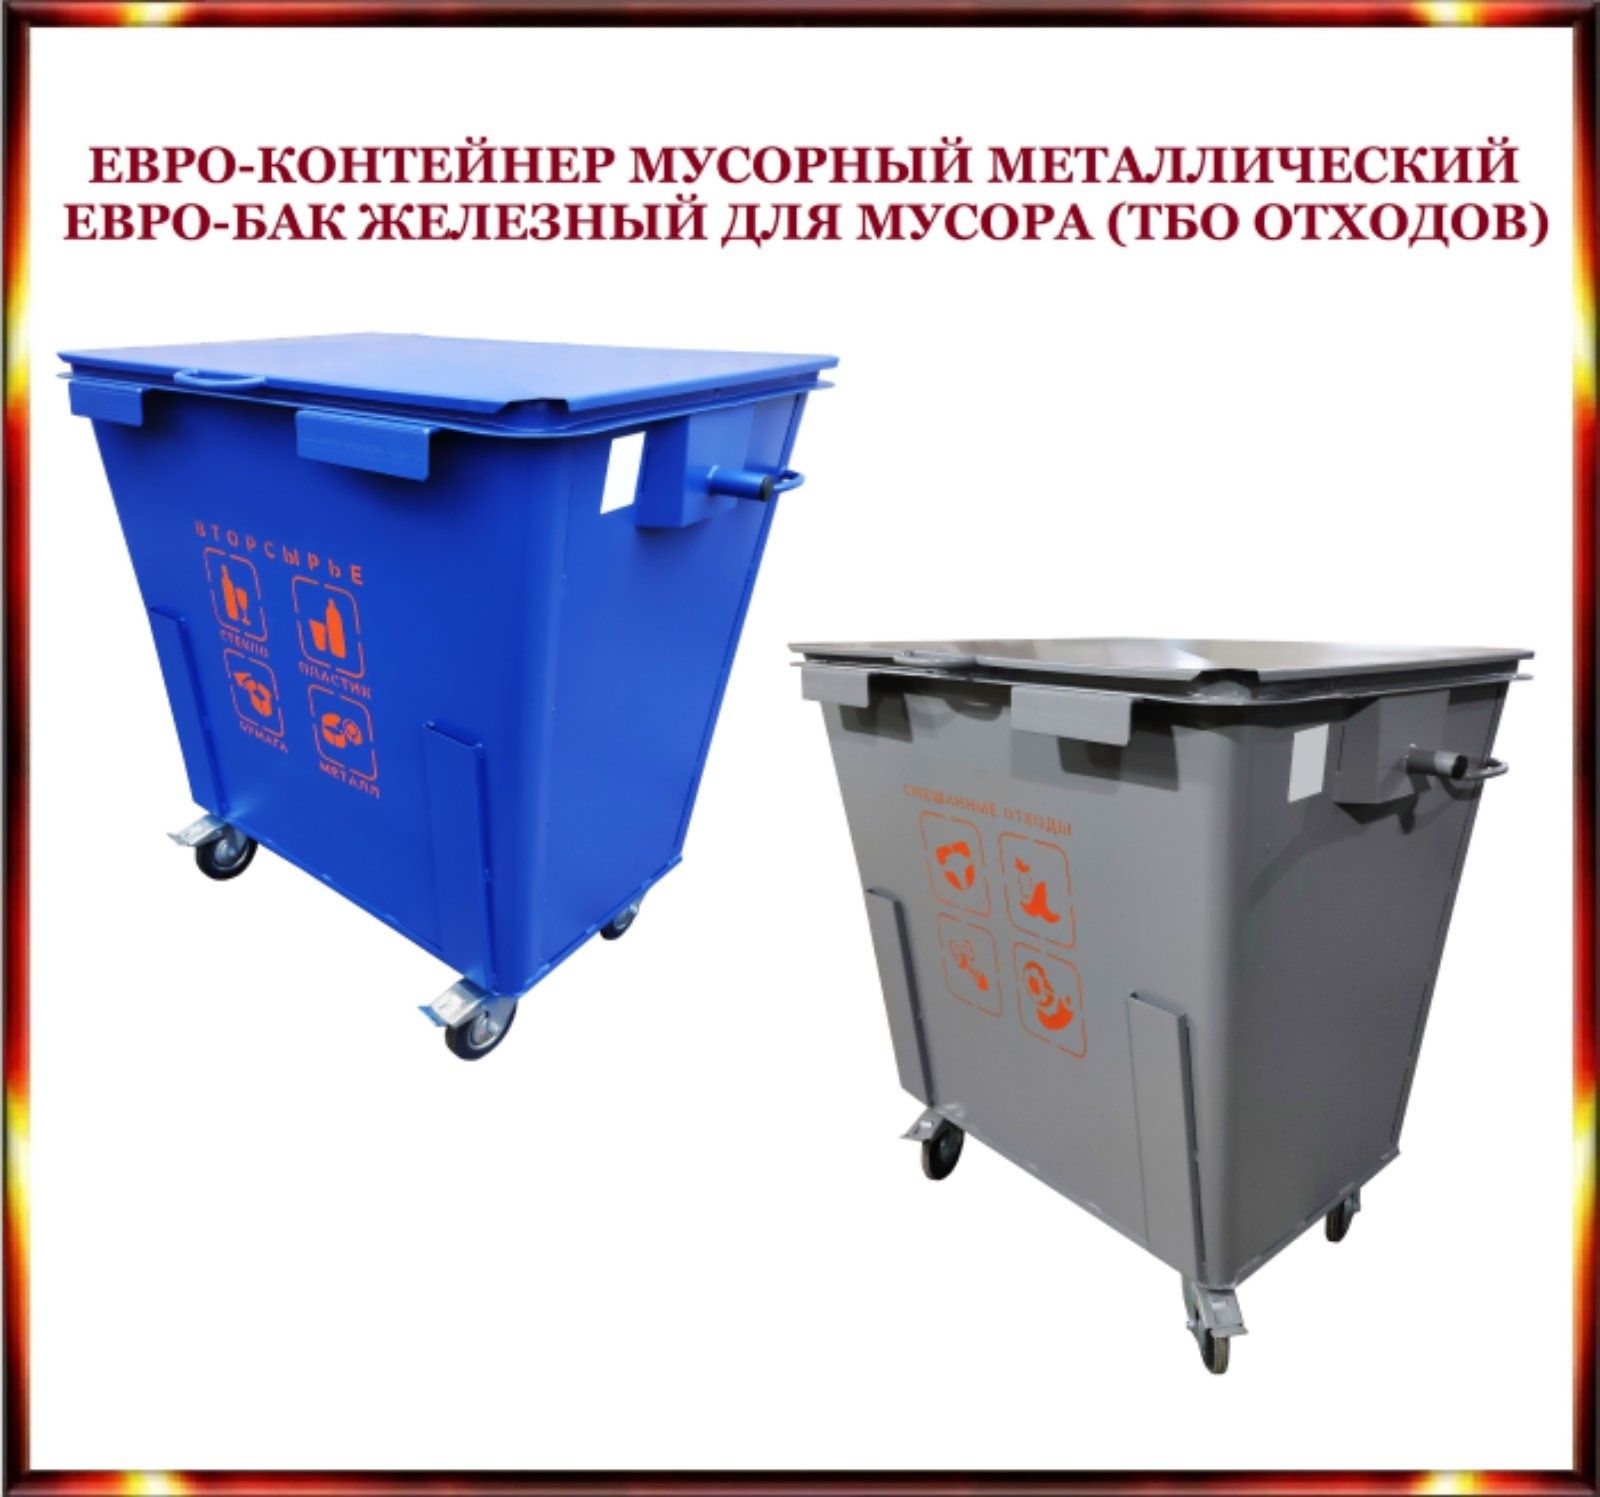 Евробак для вывоза ТБО мусора/отходов. Евроконтейнер мусорный железный